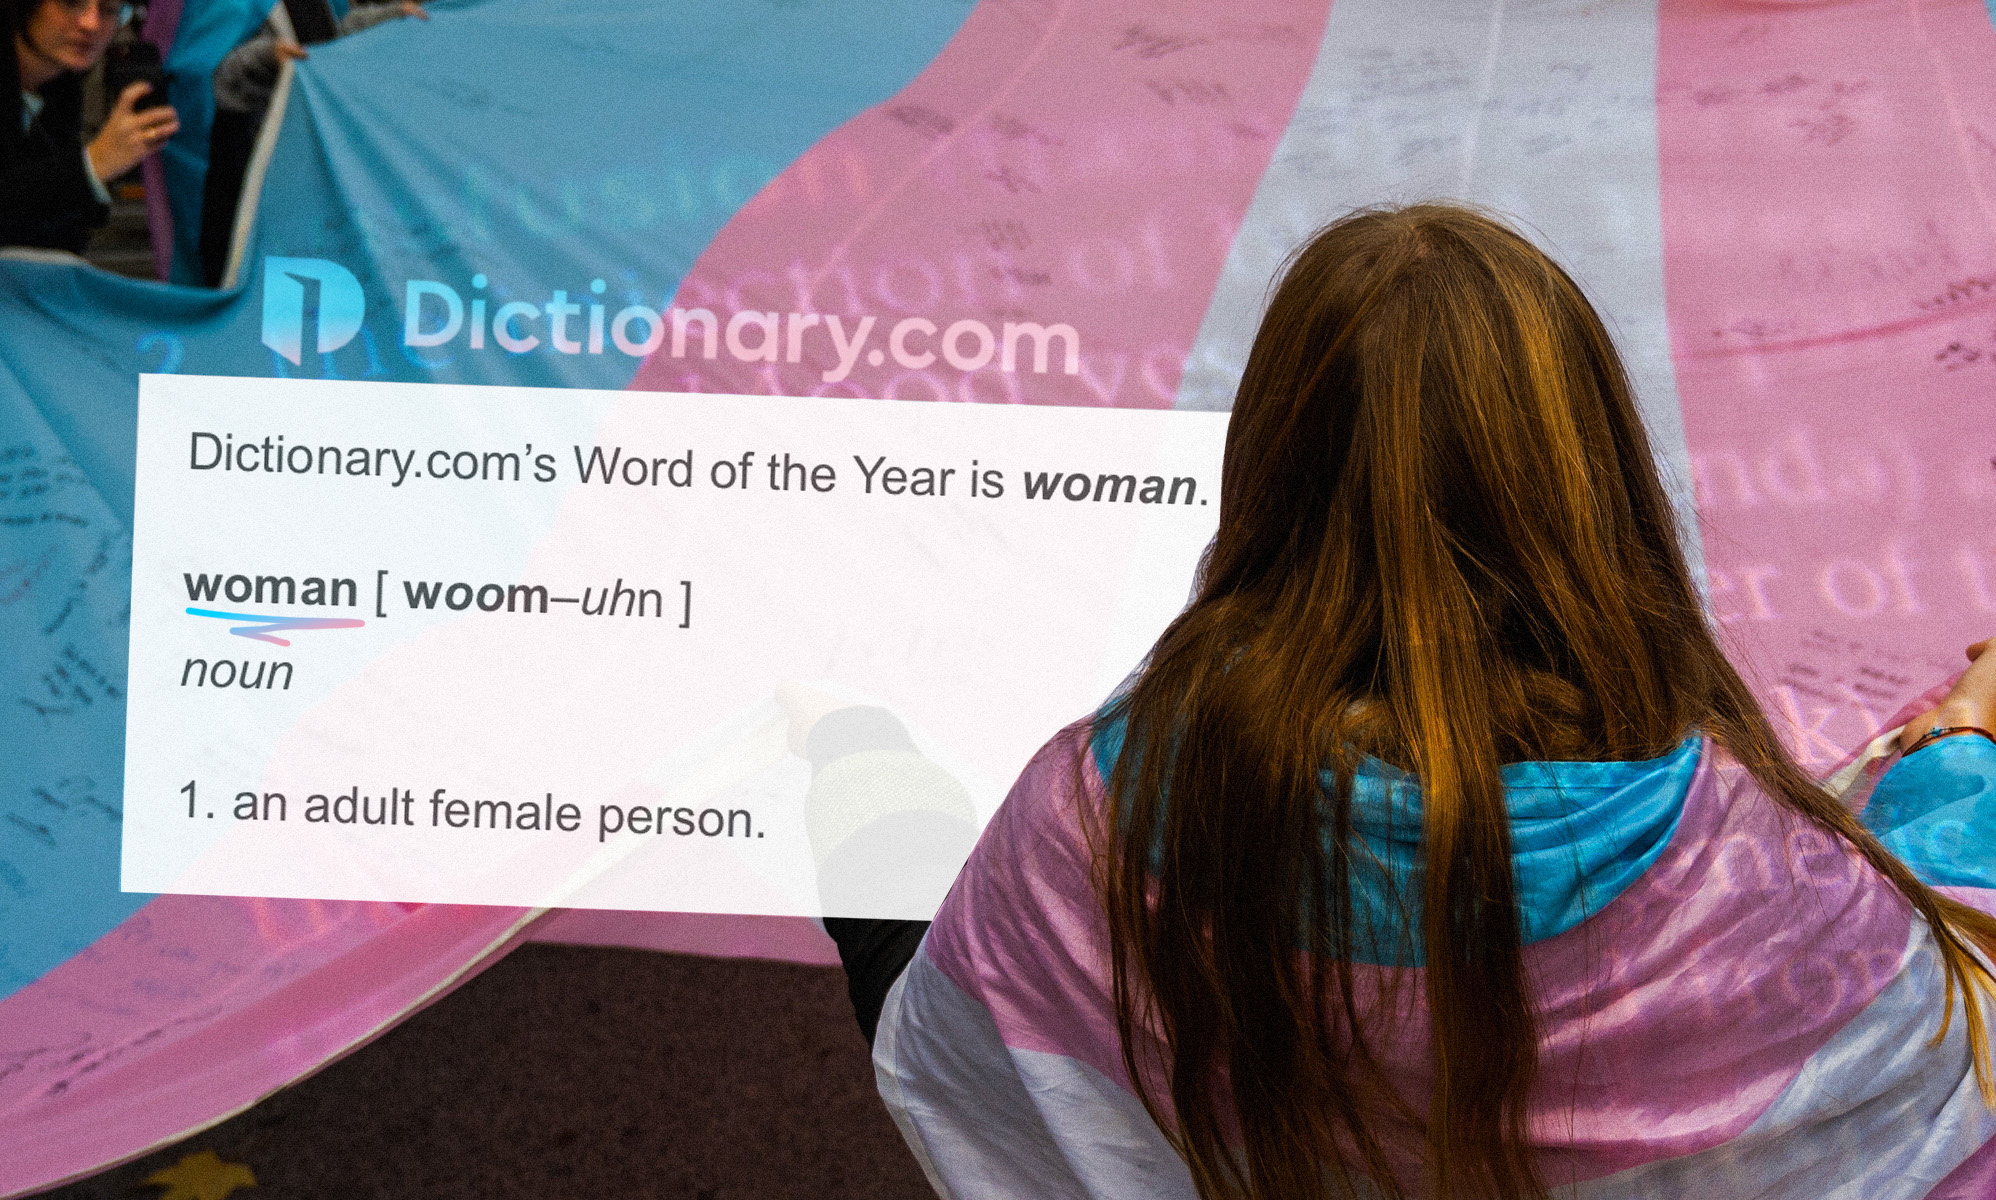 La palabra del año es "mujer" incluyendo a las personas trans en su definición